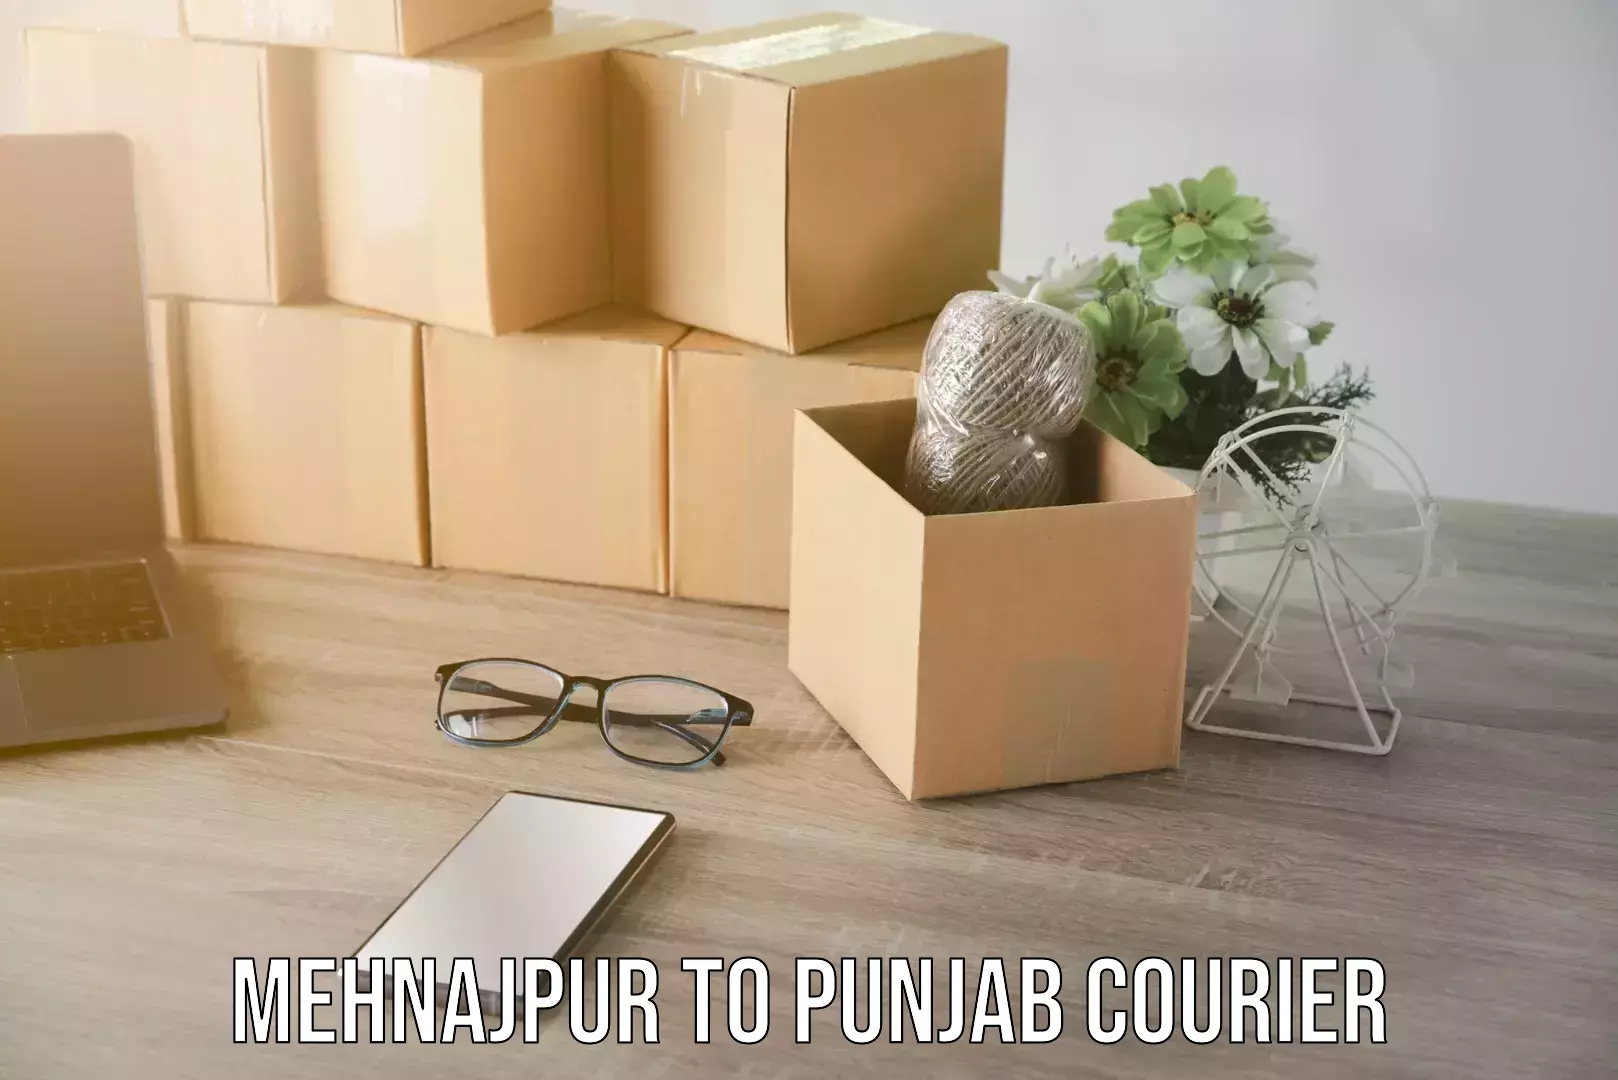 Furniture moving and handling Mehnajpur to Punjab